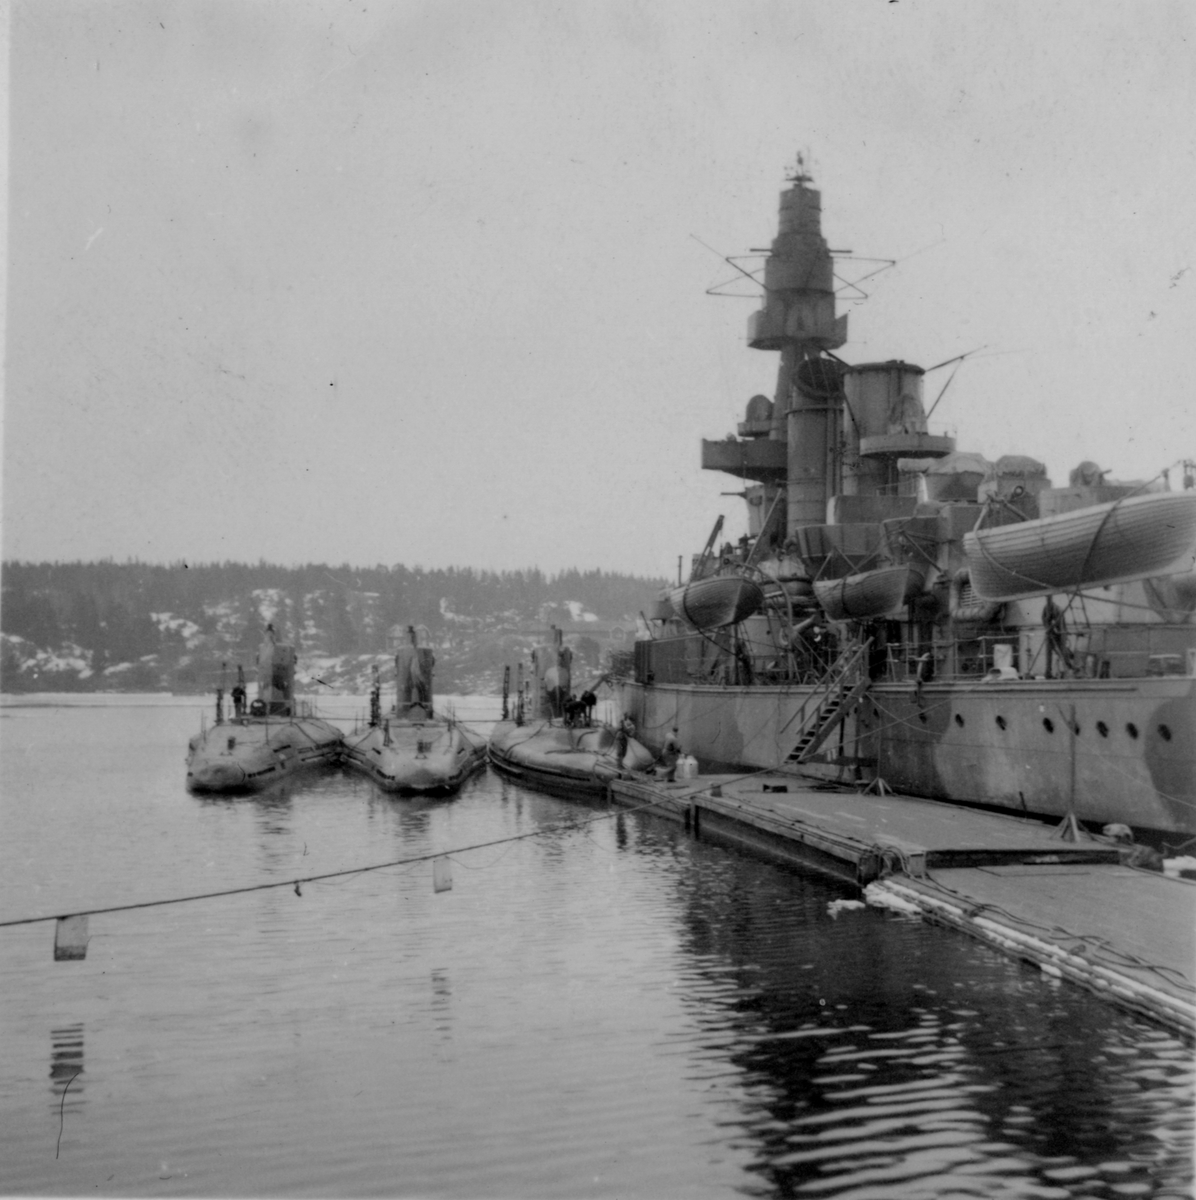 Lennart Wållberg Norrköping var förste kock på ubåten Neptun 1954 Neptuns långresa 1954.
Vid depåfartyget Patricias varvs besök, används pansarskeppet Drottning Victoria som värmekälla vid Märsgarnsviken.